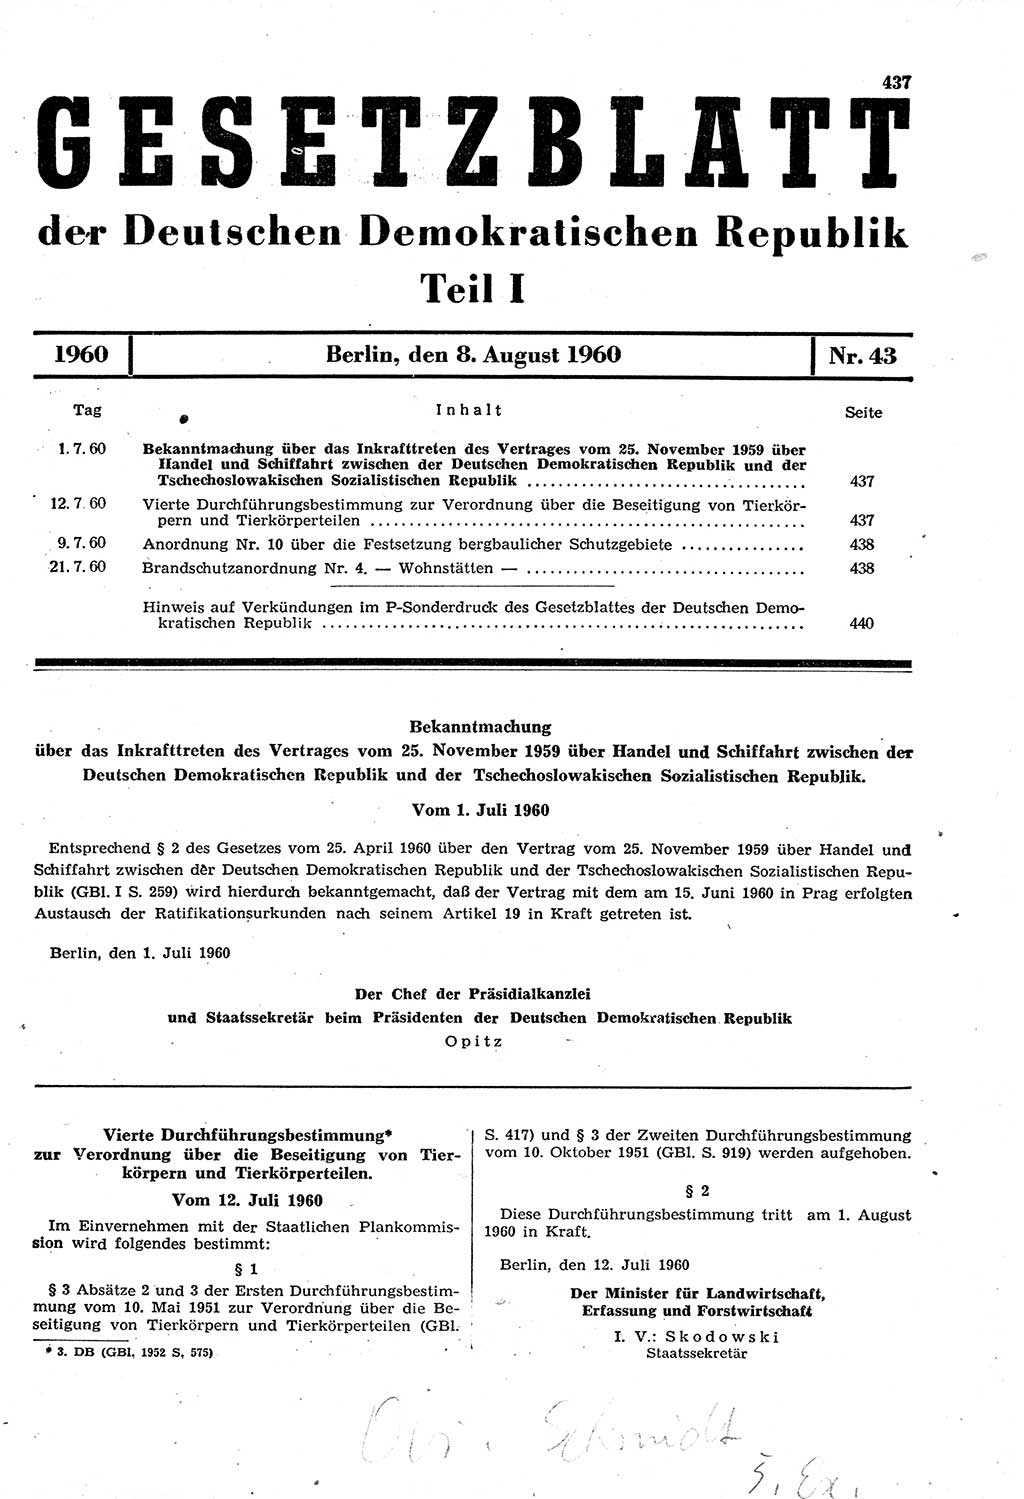 Gesetzblatt (GBl.) der Deutschen Demokratischen Republik (DDR) Teil Ⅰ 1960, Seite 437 (GBl. DDR Ⅰ 1960, S. 437)